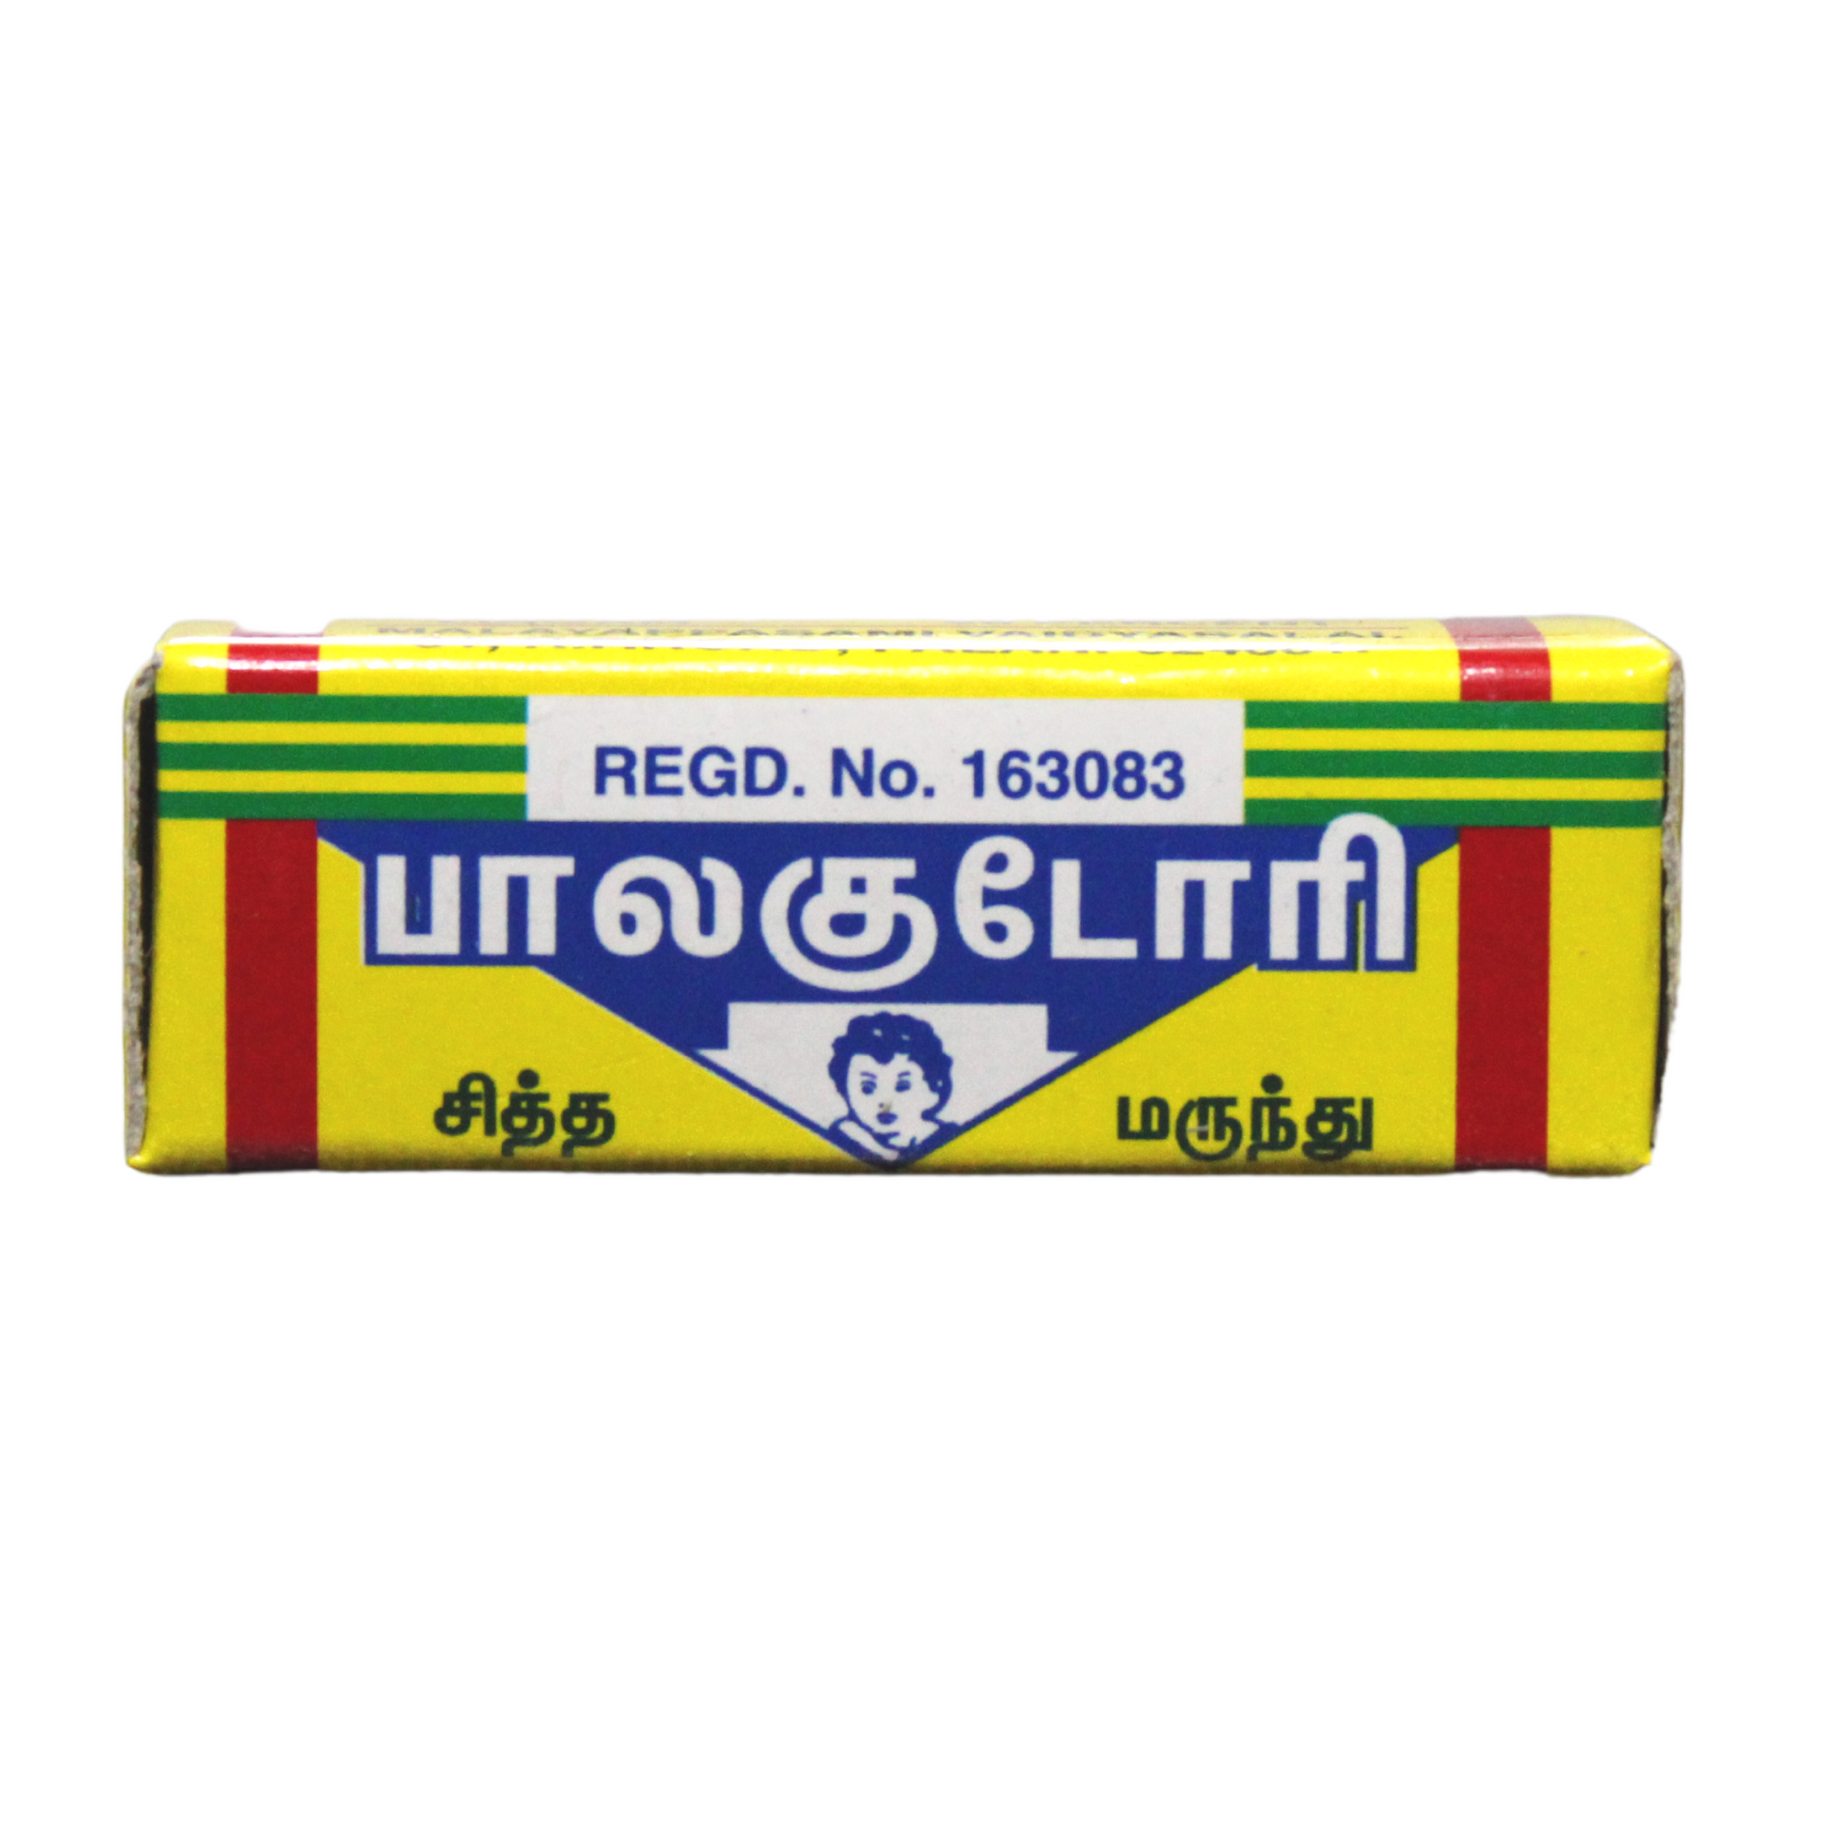 Shop Malaiyappasamy Balakudori Tablets - 1gm at price 40.00 from Malaiyappasamy Online - Ayush Care